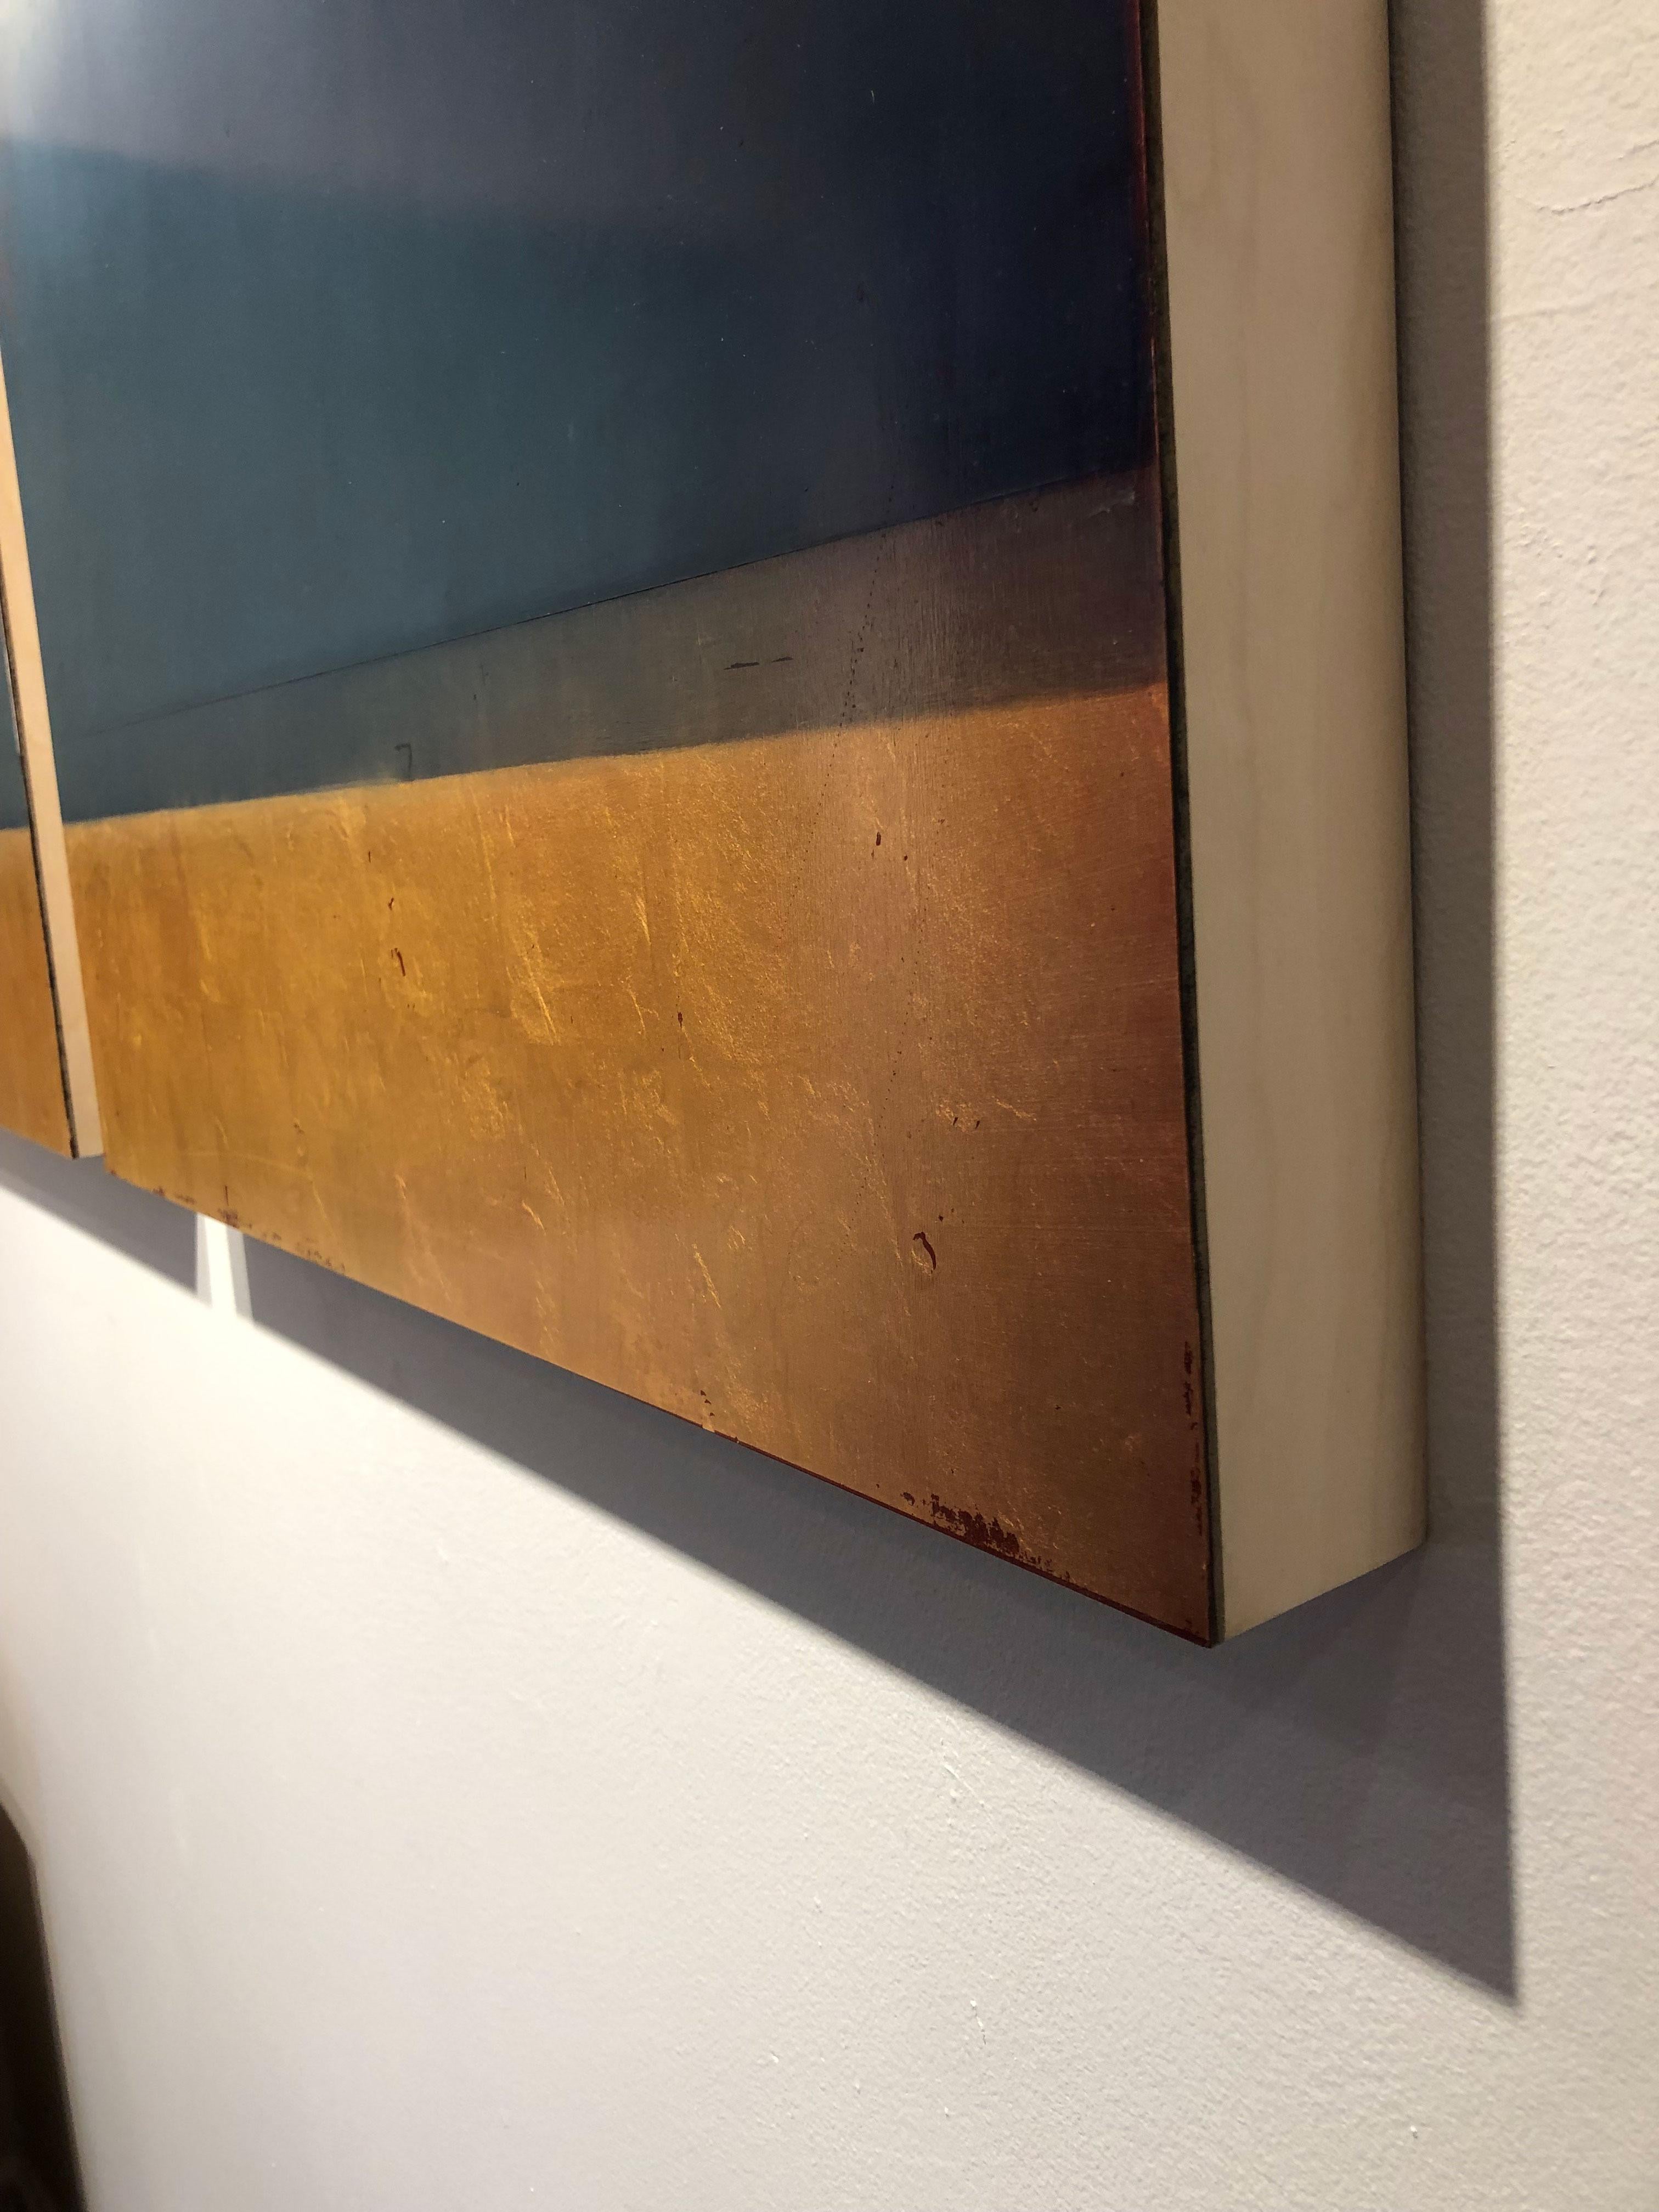 A Still Noise - Gold Landscape Painting by Pauline Ziegen